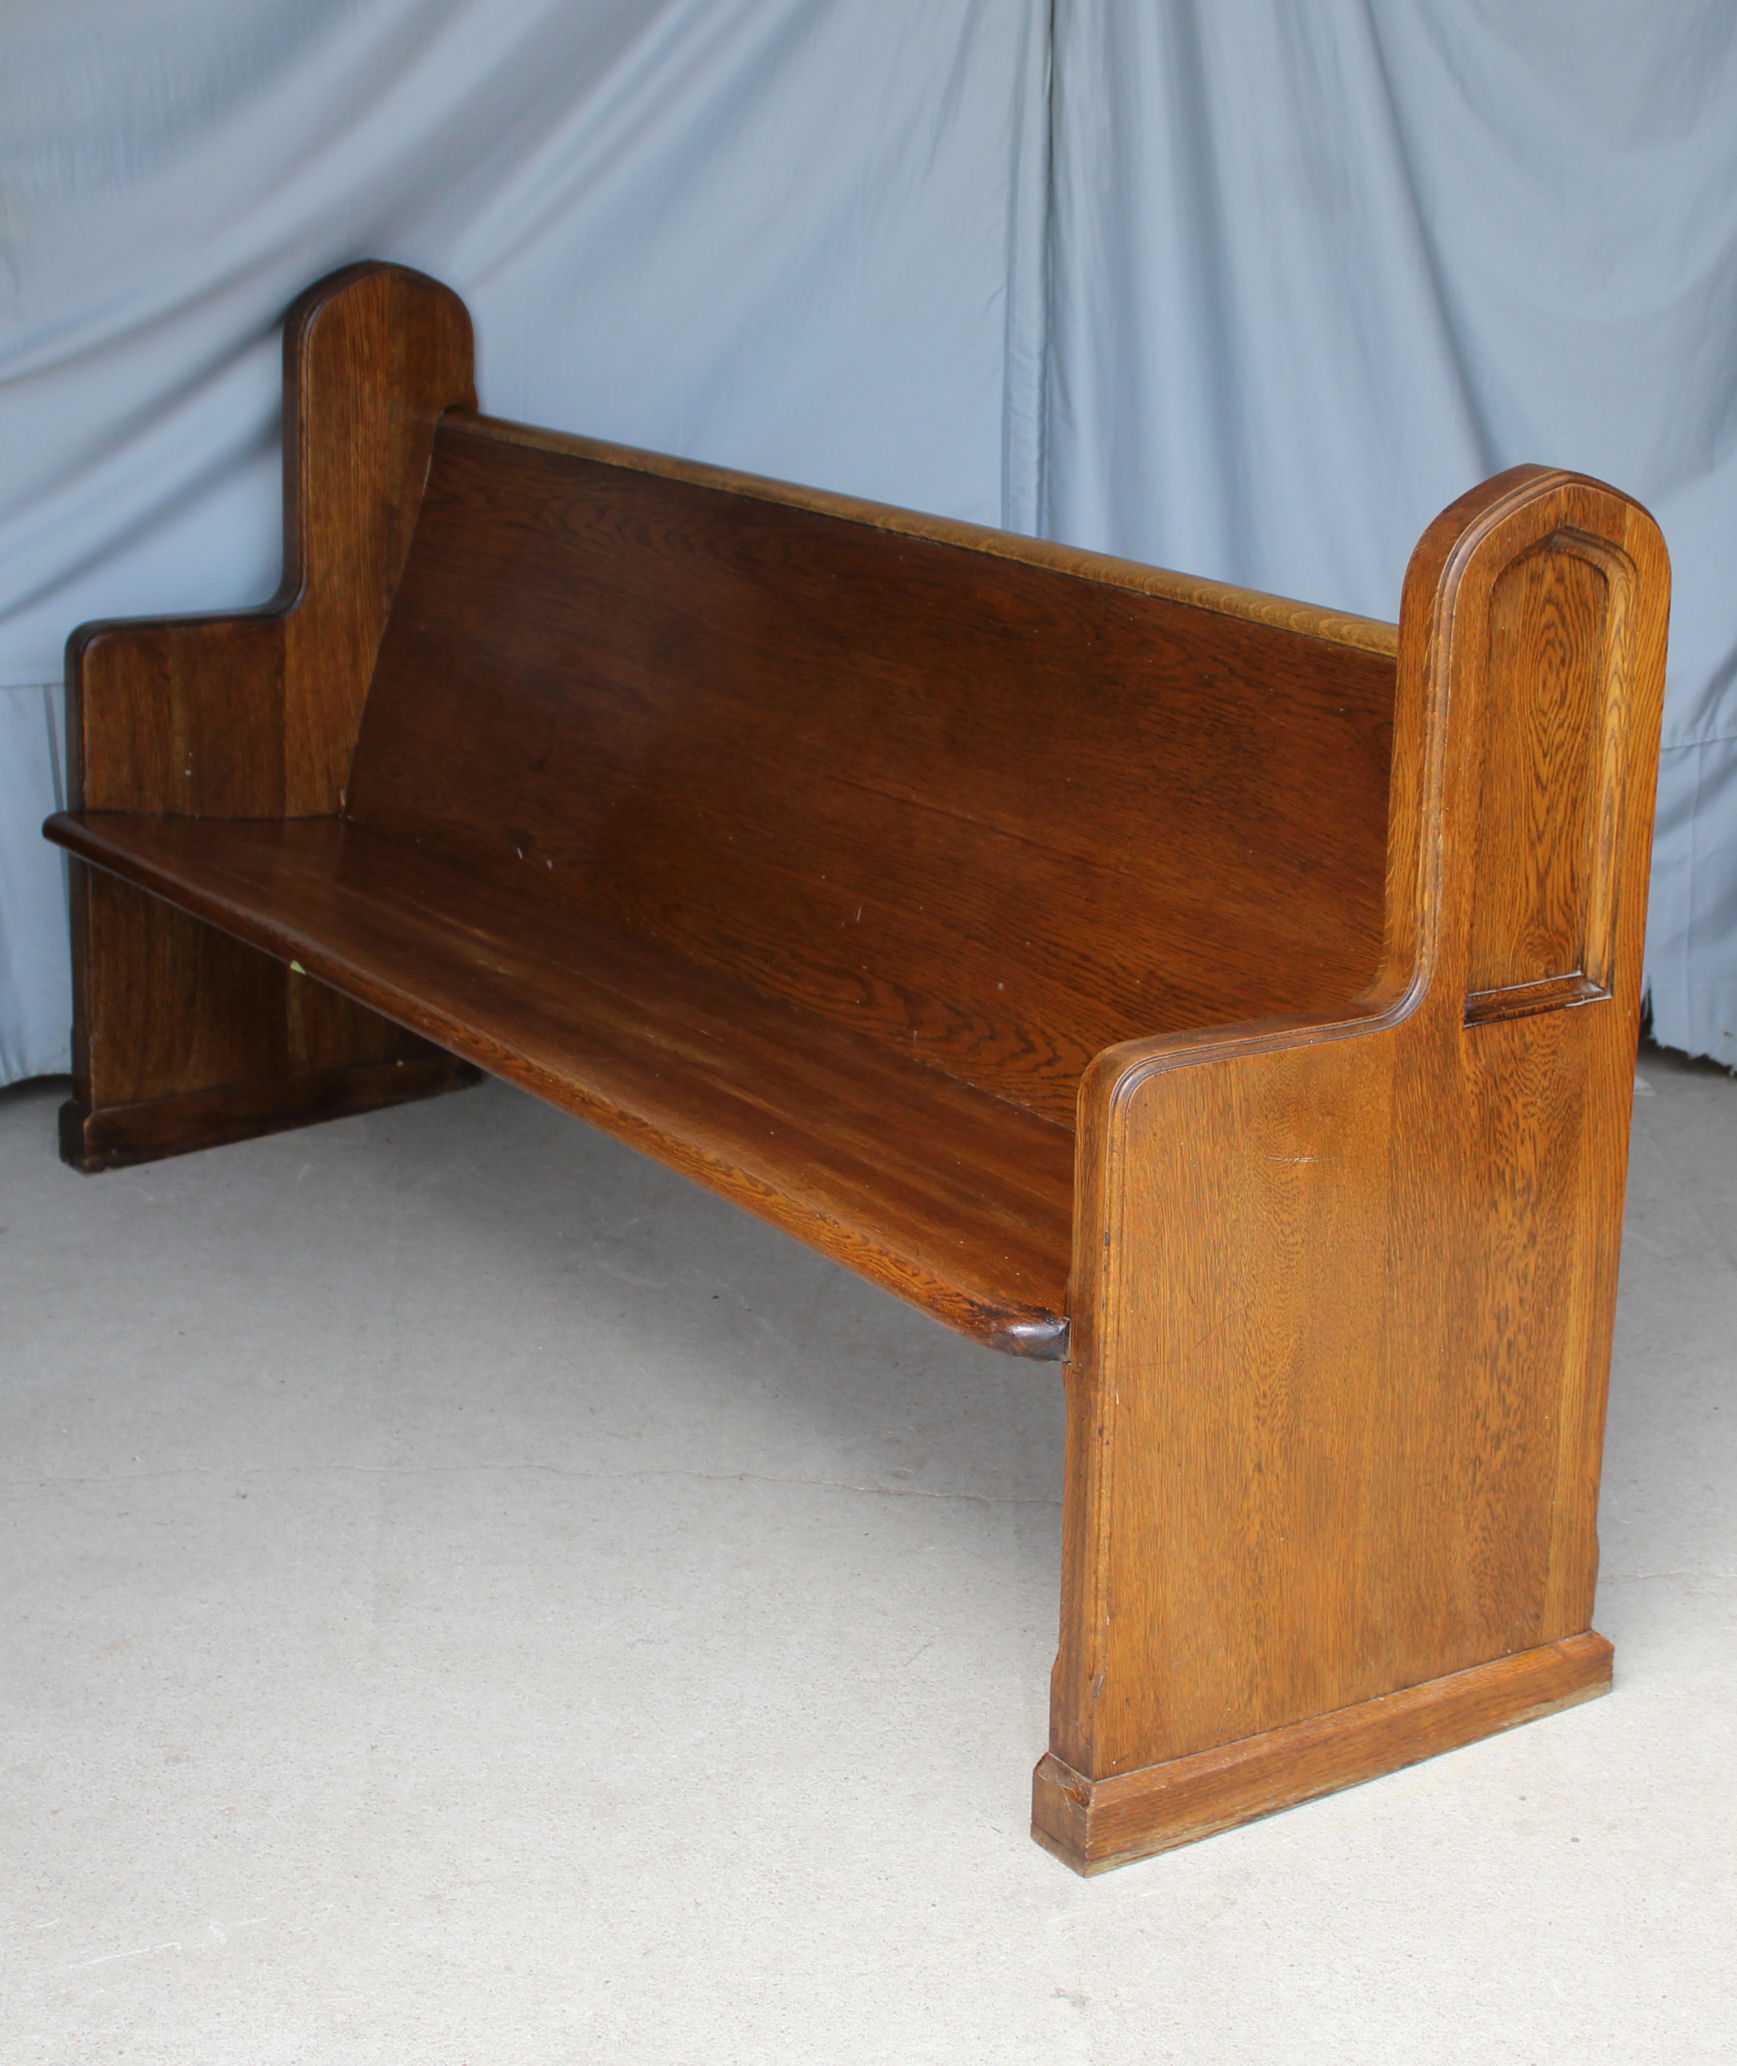 Bargain John's Antiques | Antique Oak Deacon Bench - 6 feet length